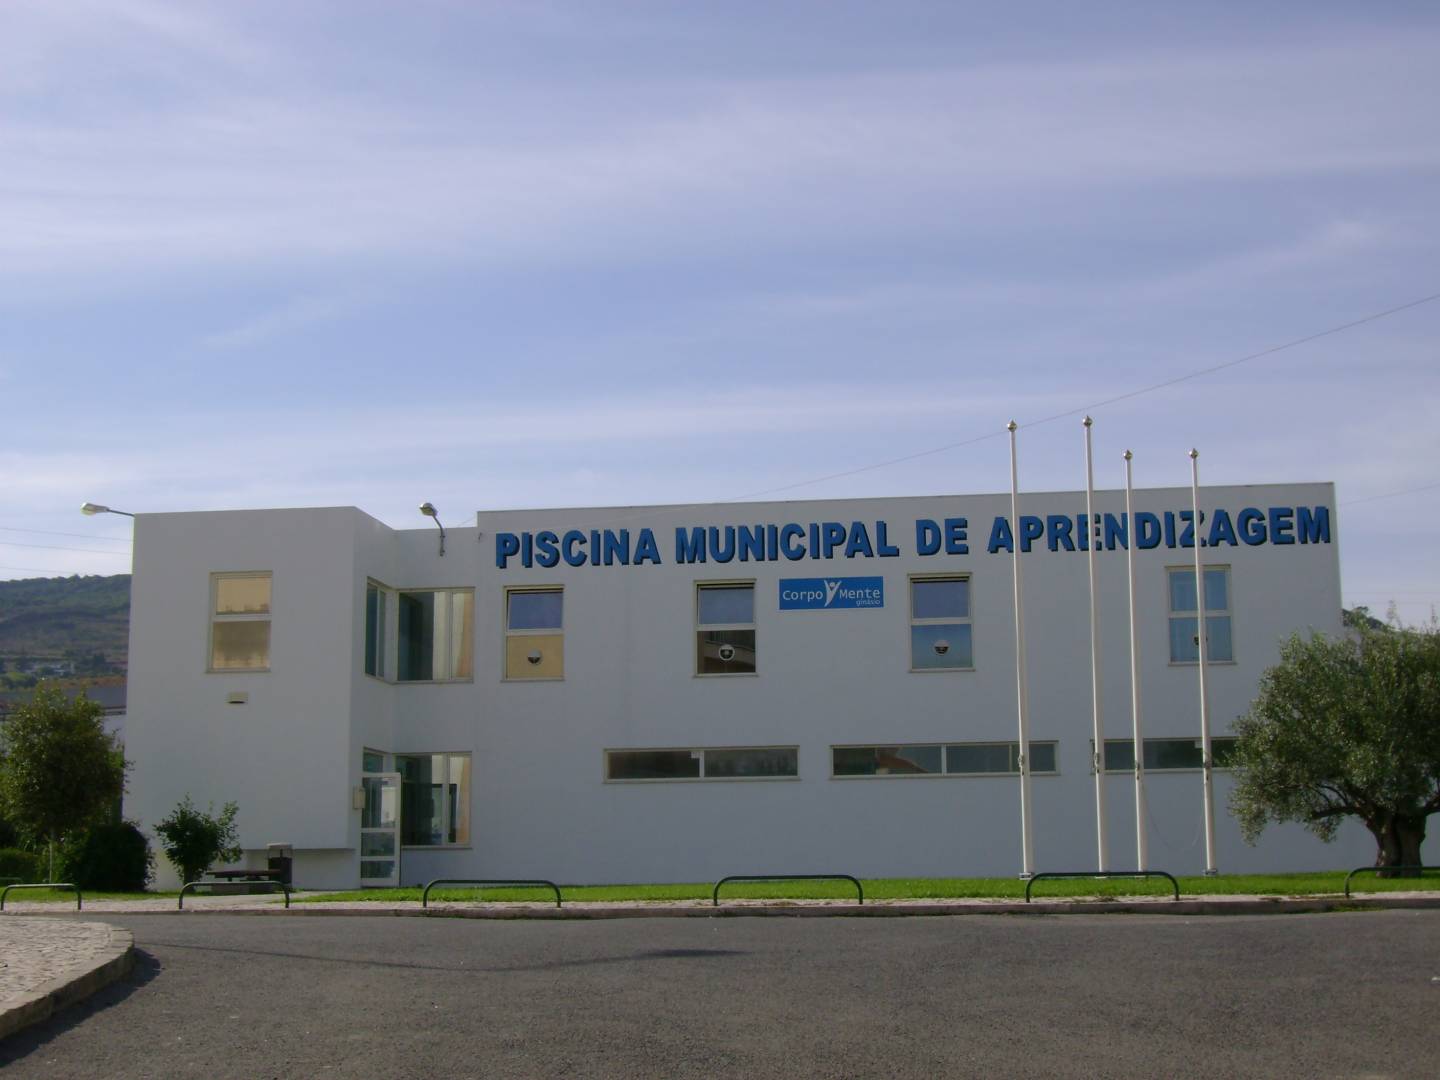 Oblongo garra Dramaturgo Piscina Municipal de Aprendizagem de Arruda dos Vinhos - Arruda dos Vinhos  | All About Portugal